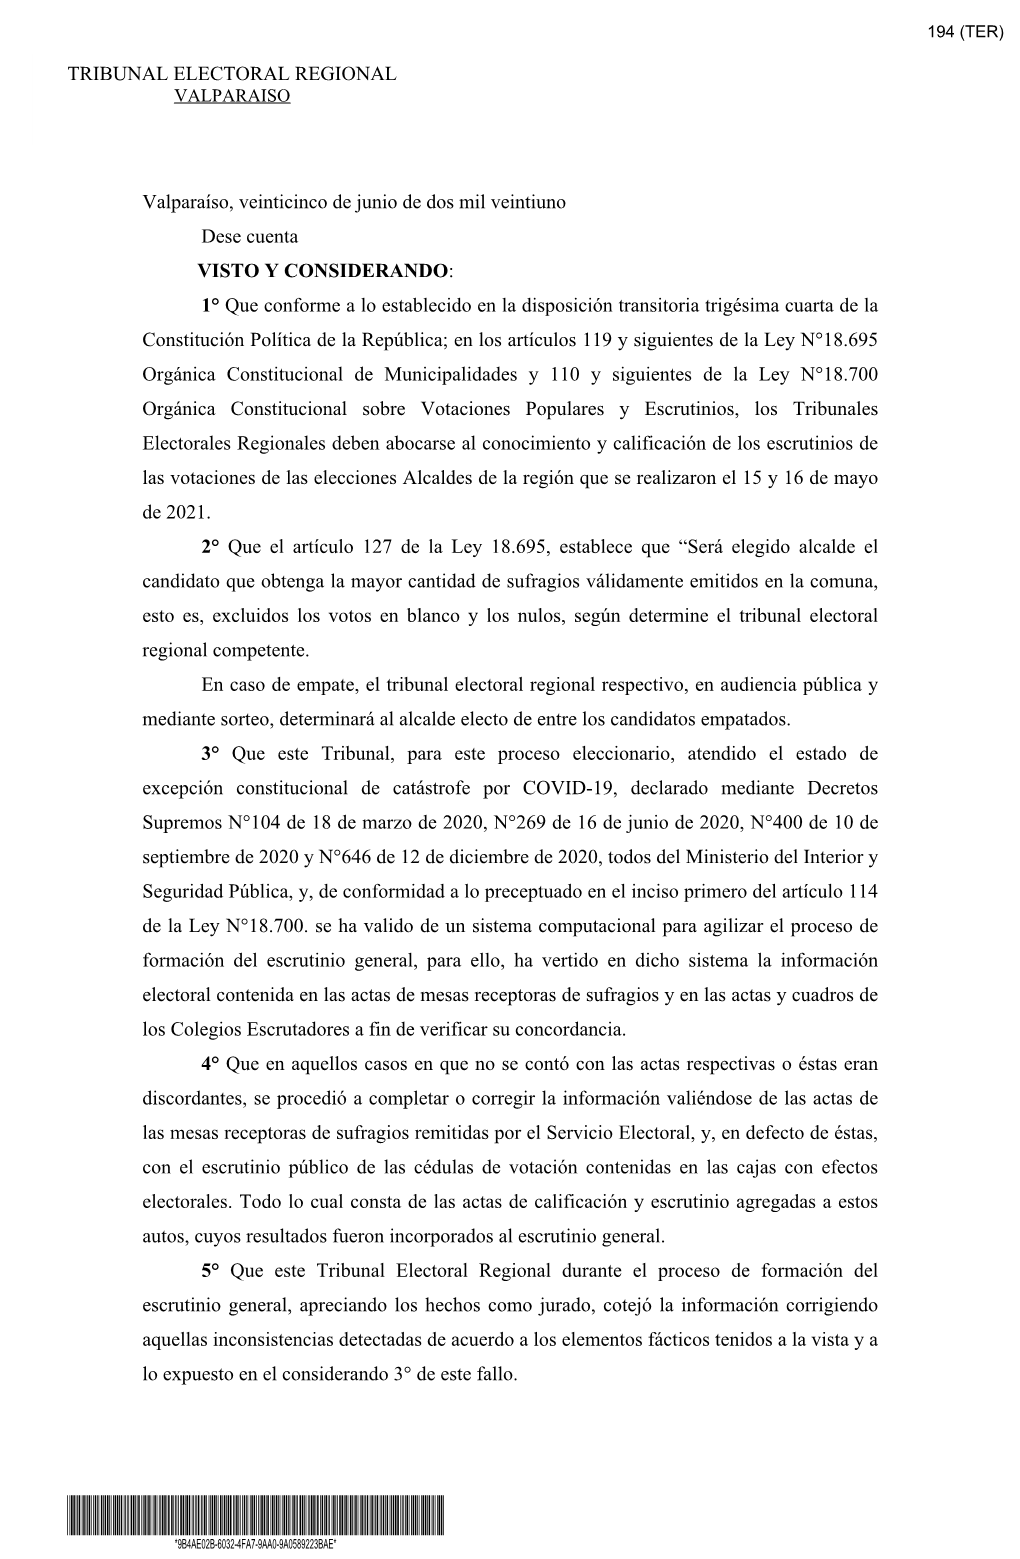 Sentencia De Proclamación De Alcaldes Del Tribunal Electoral De Valparaíso